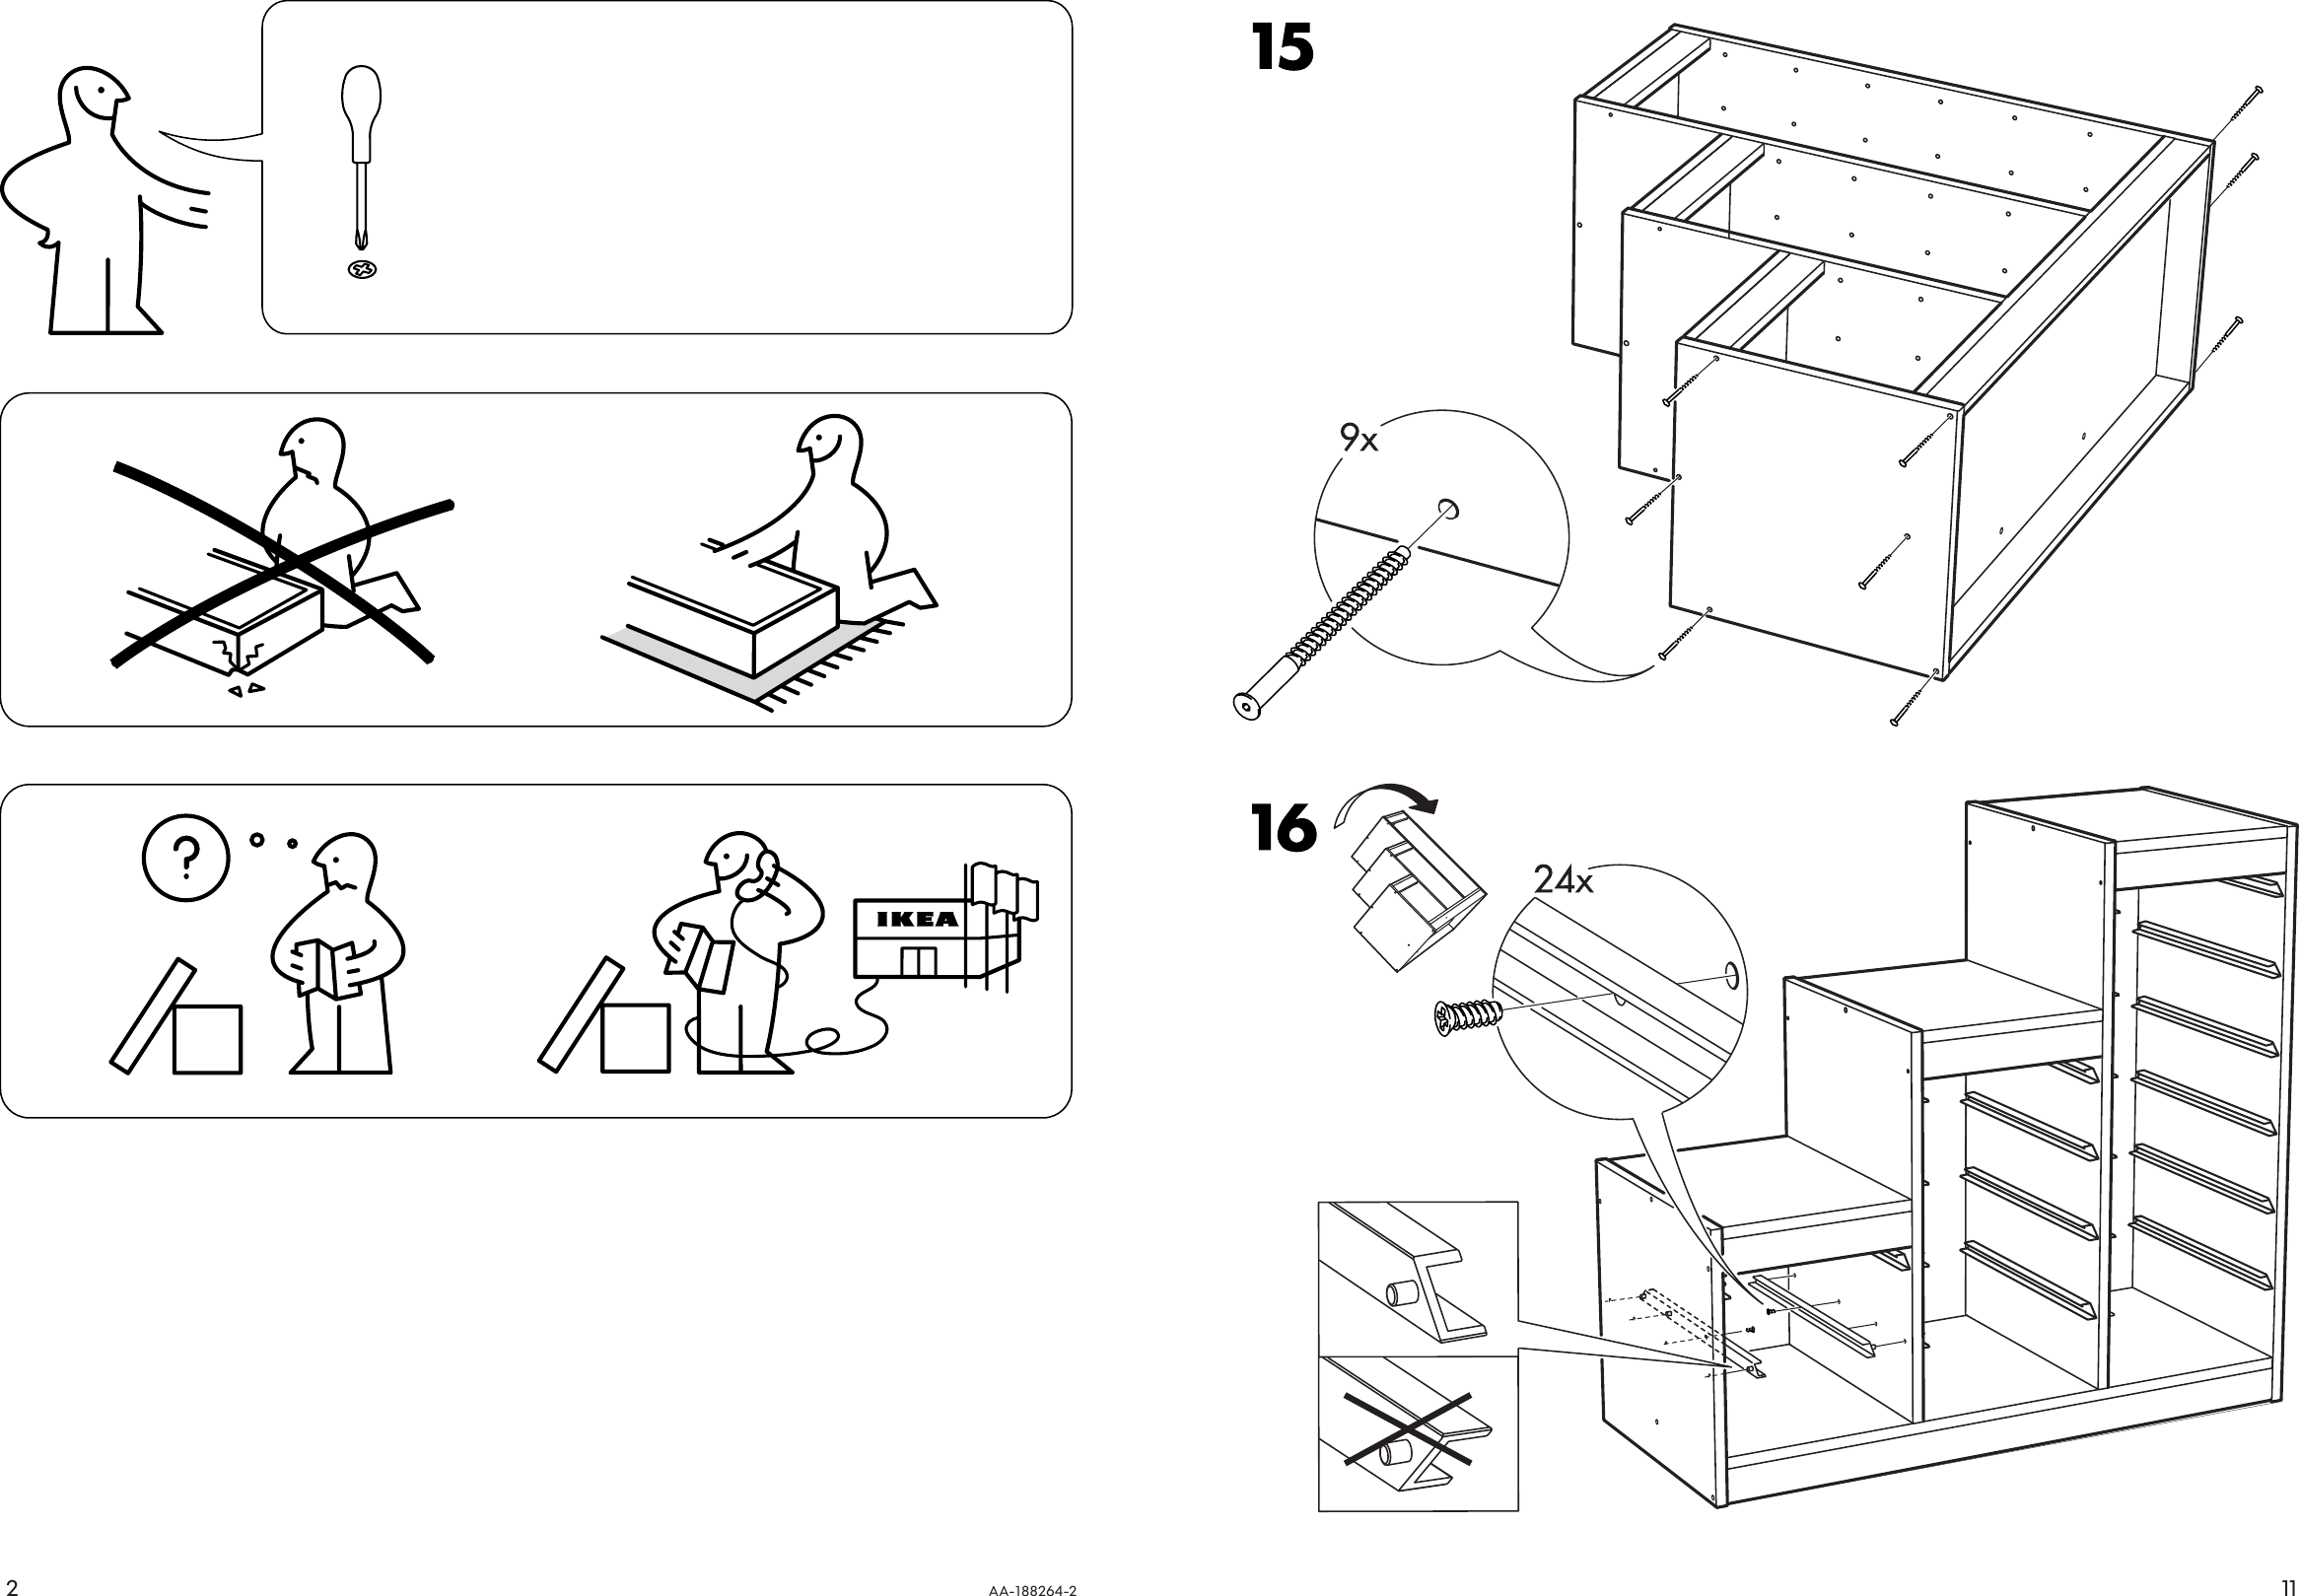 Сборка стеллажа икеа. Ikea manual. Стеллаж икеа инструкция. Схема сборки стеллажа икеа. Trofast икеа инструкция.